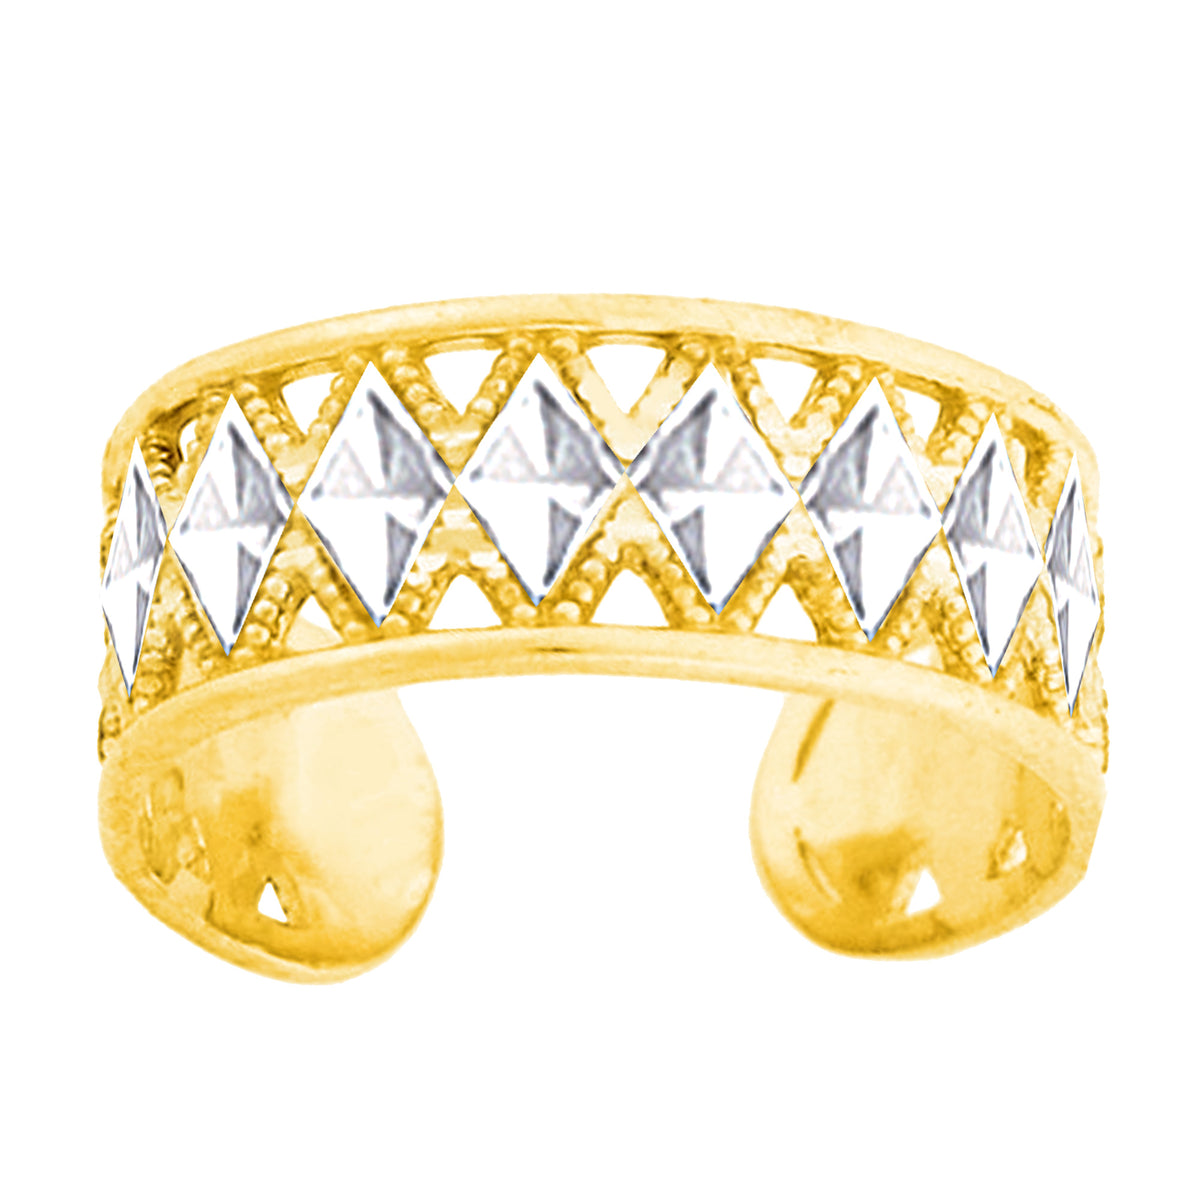 Anello regolabile in oro bianco e giallo 14 carati con taglio a diamante e design Millgrain, gioielli di design da 6 mm per uomini e donne